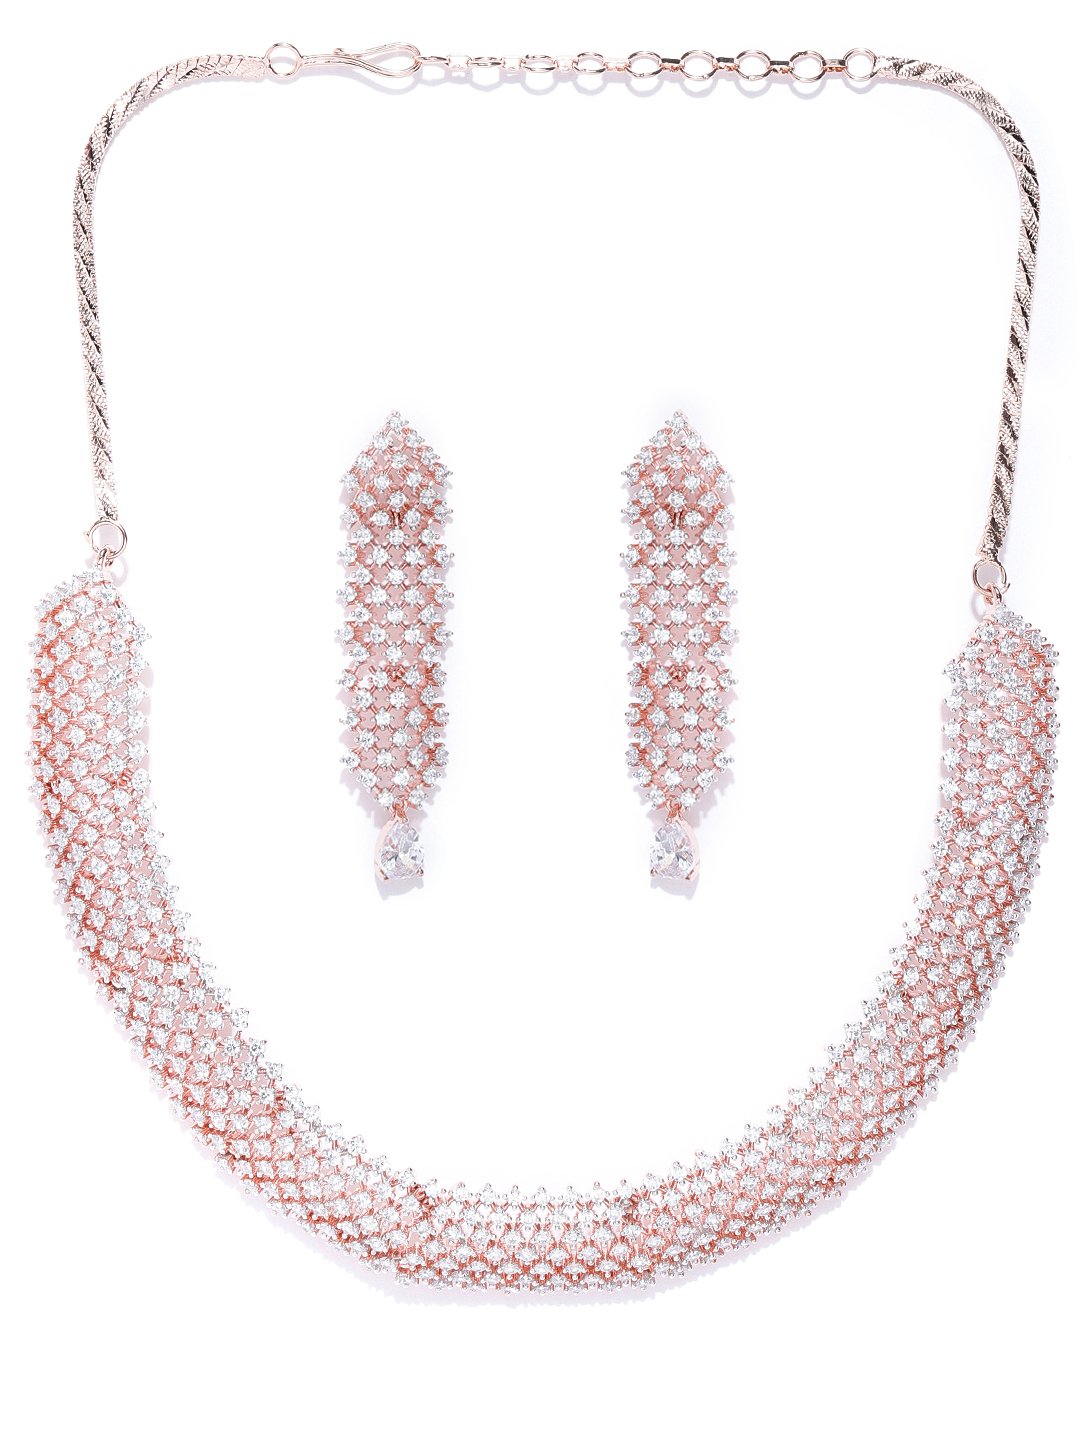 Prita By Priyaasi Priyaasi Pink Heart Rose Gold Layered Necklace For Women (Rose Gold, OS)